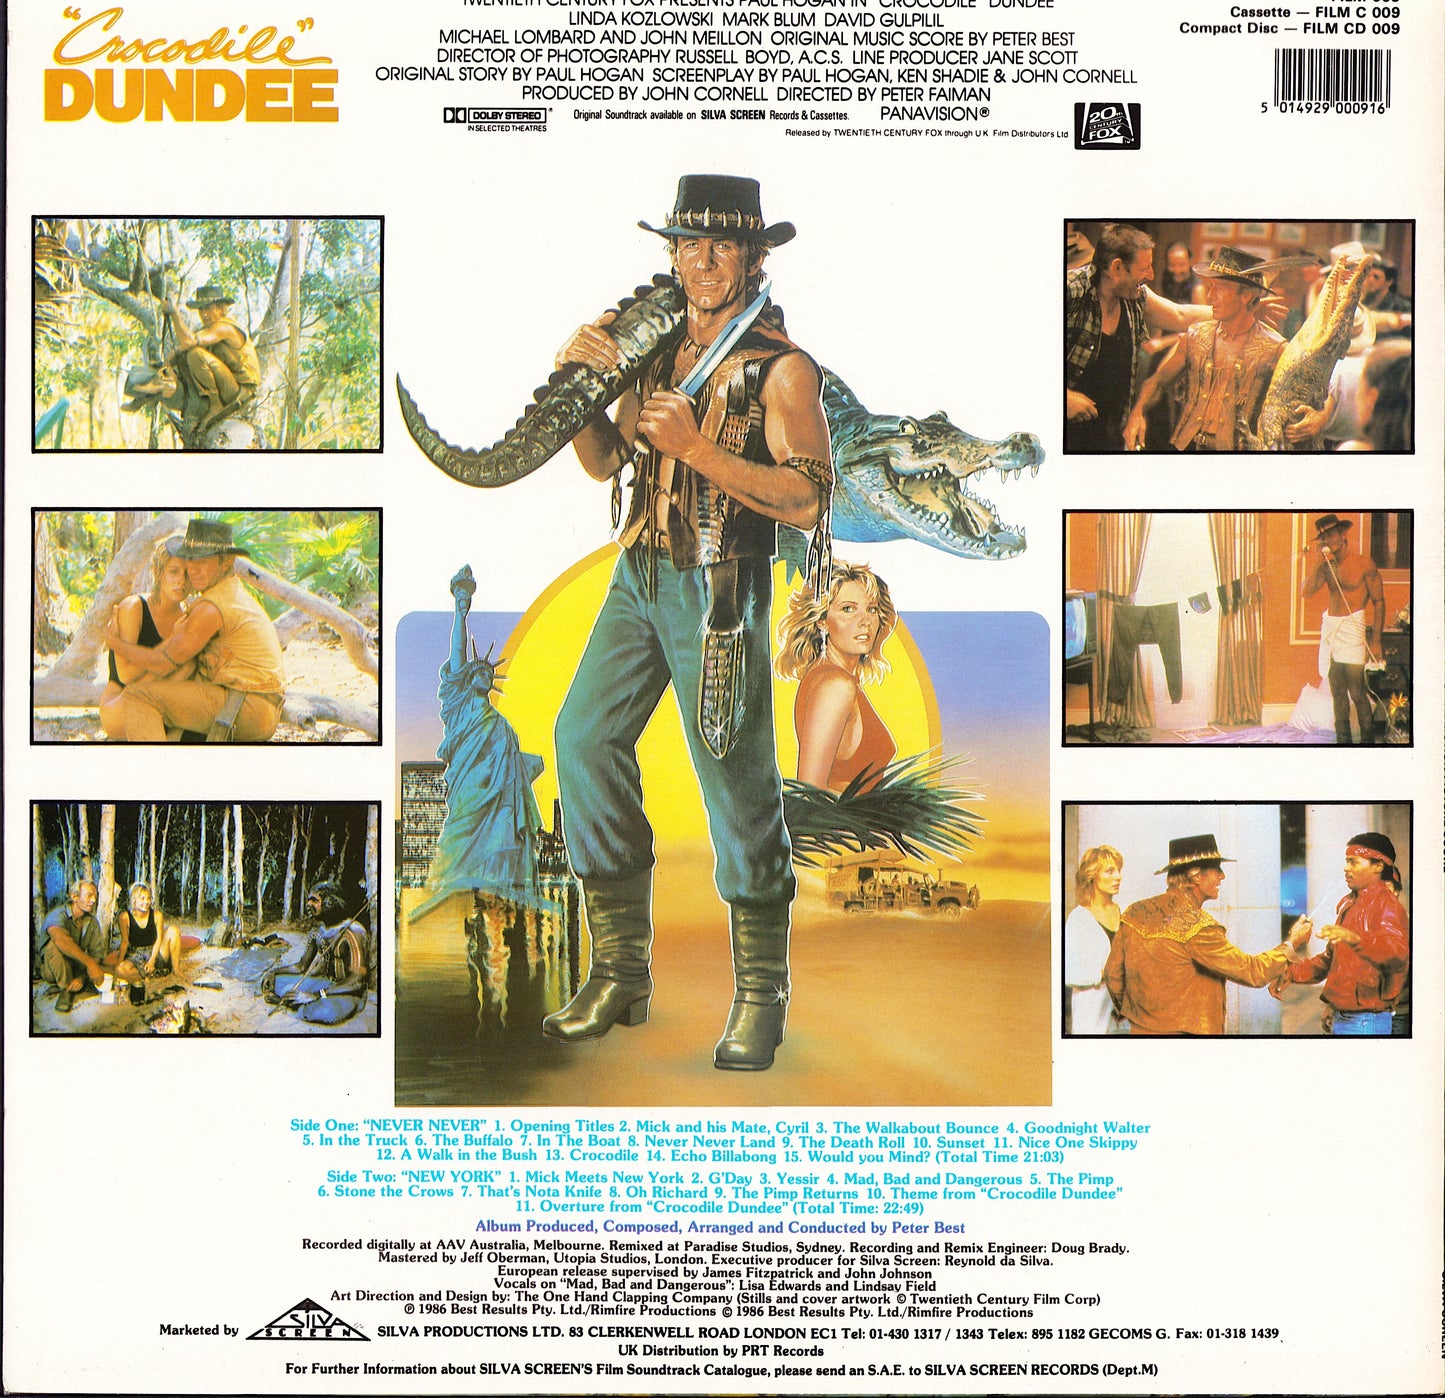 Peter Best - "Crocodile" Dundee - Original Motion Picture Score Vinyl LP